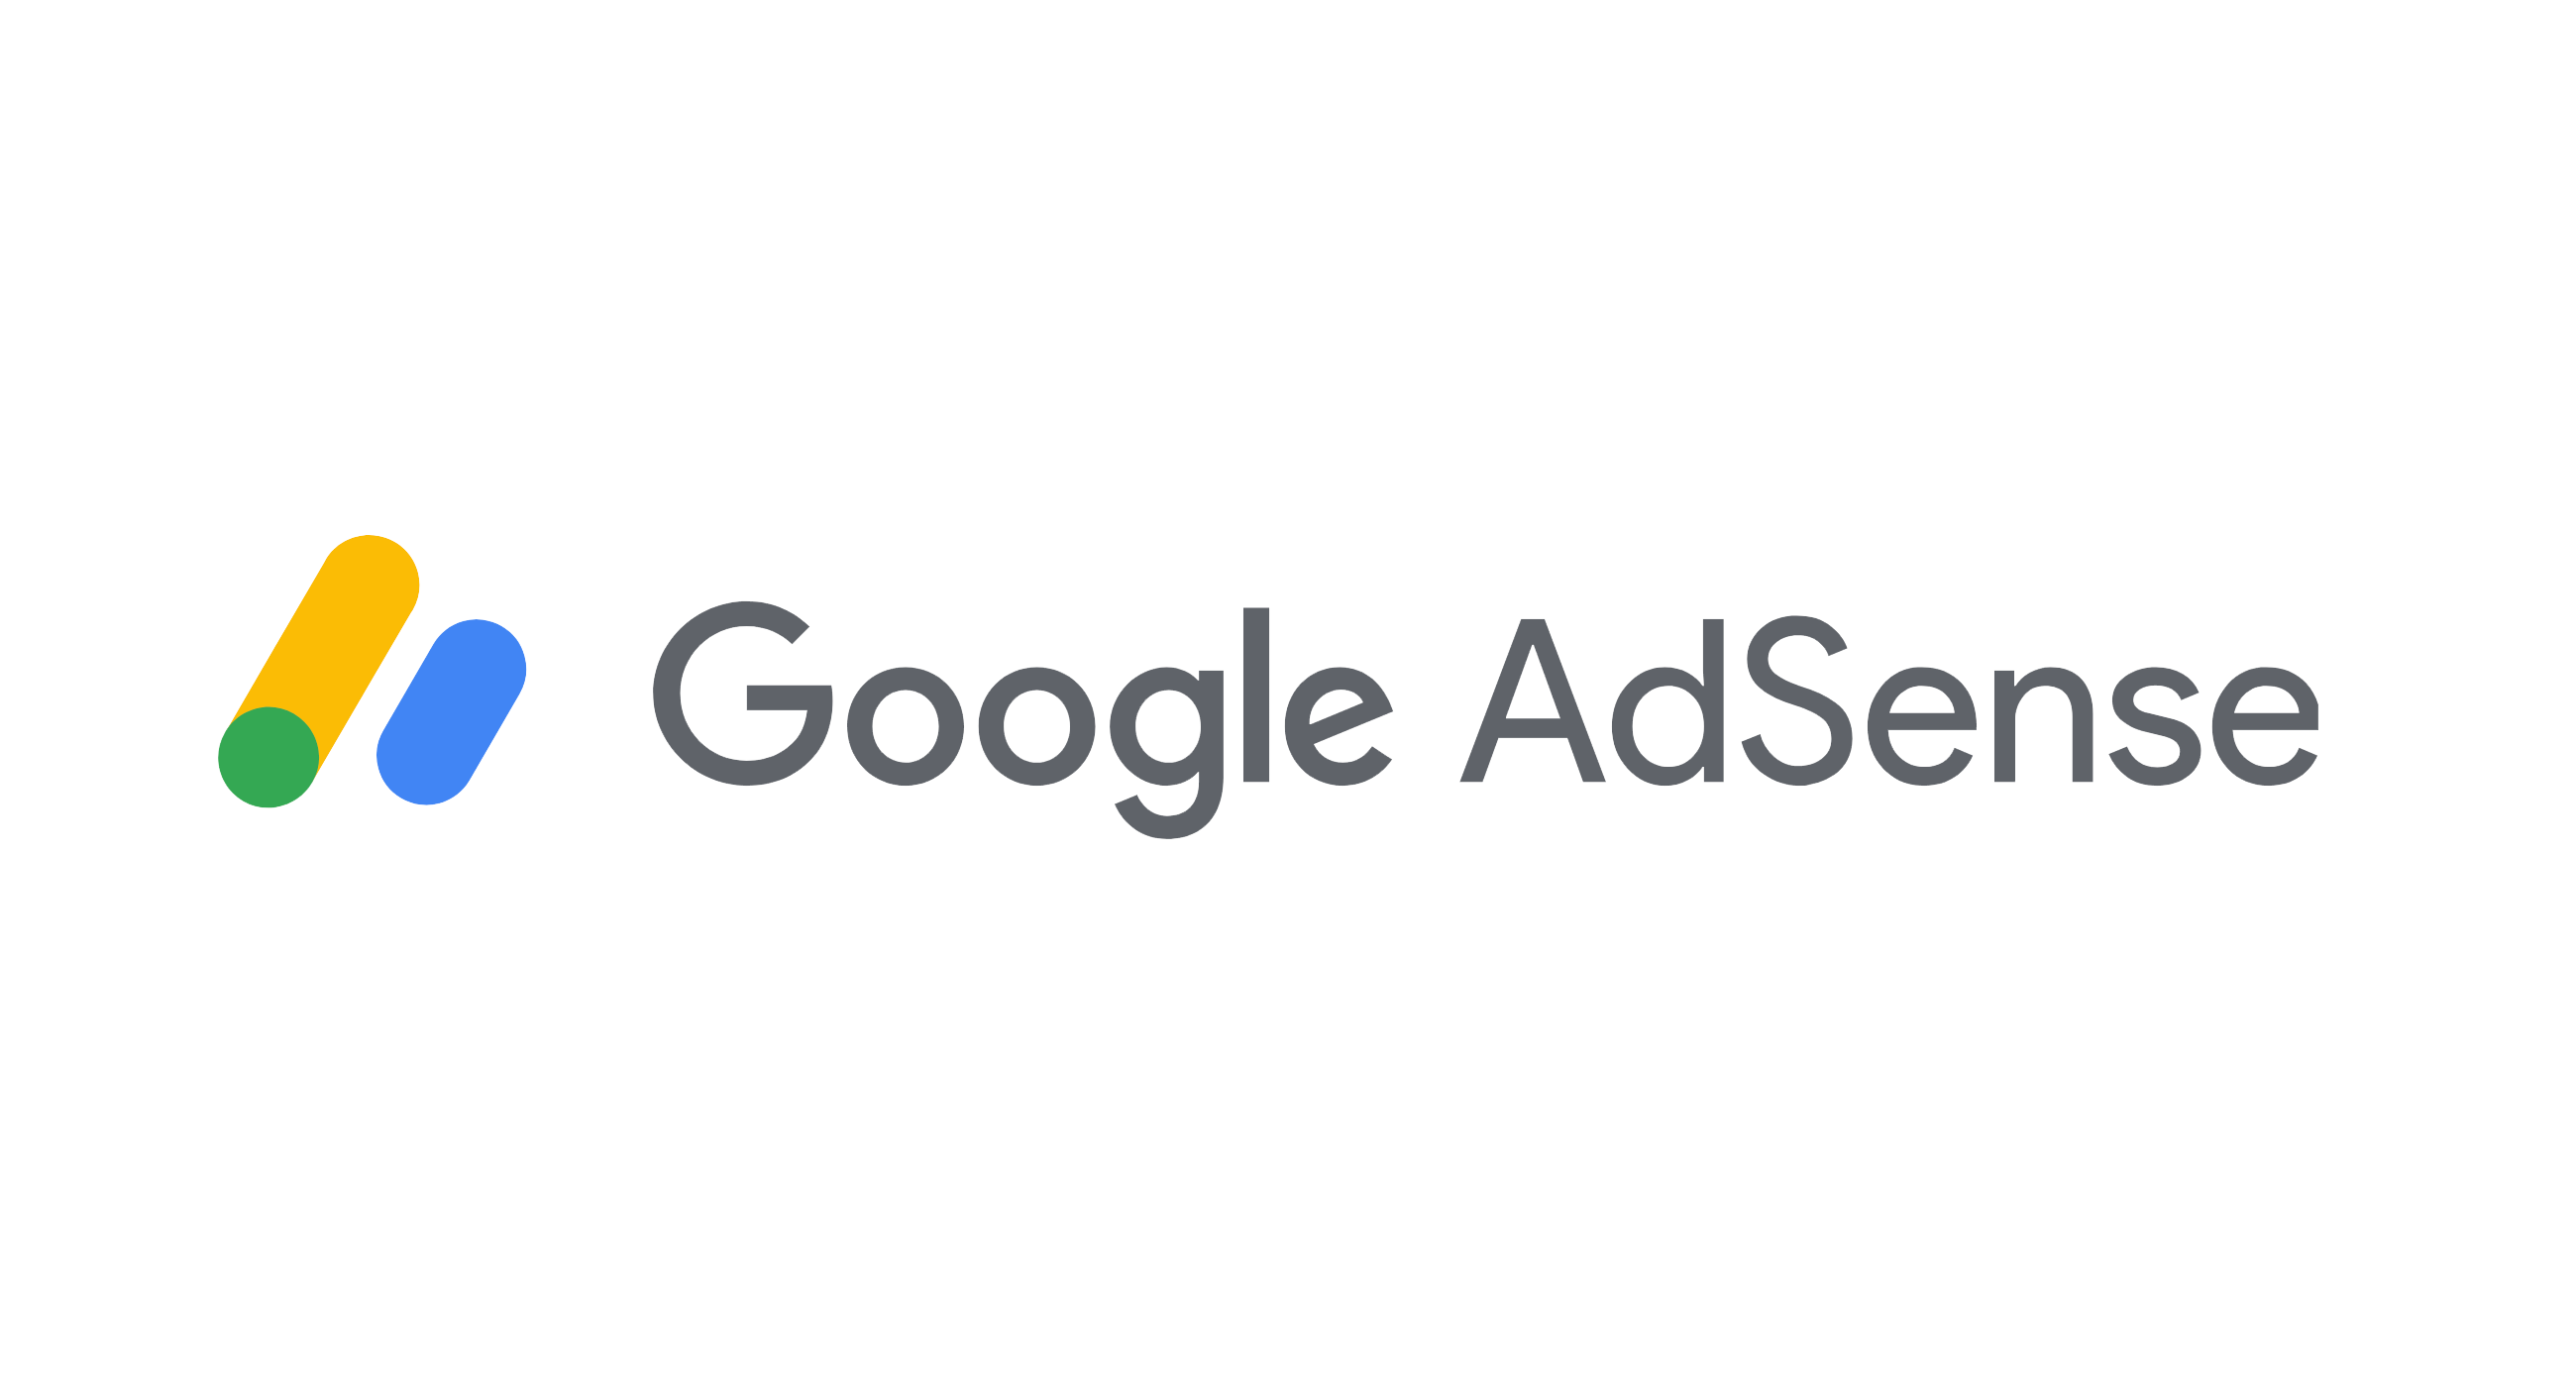 Гугл Адсенс: вход в личный кабинет, аккаунт, настройка и возможности